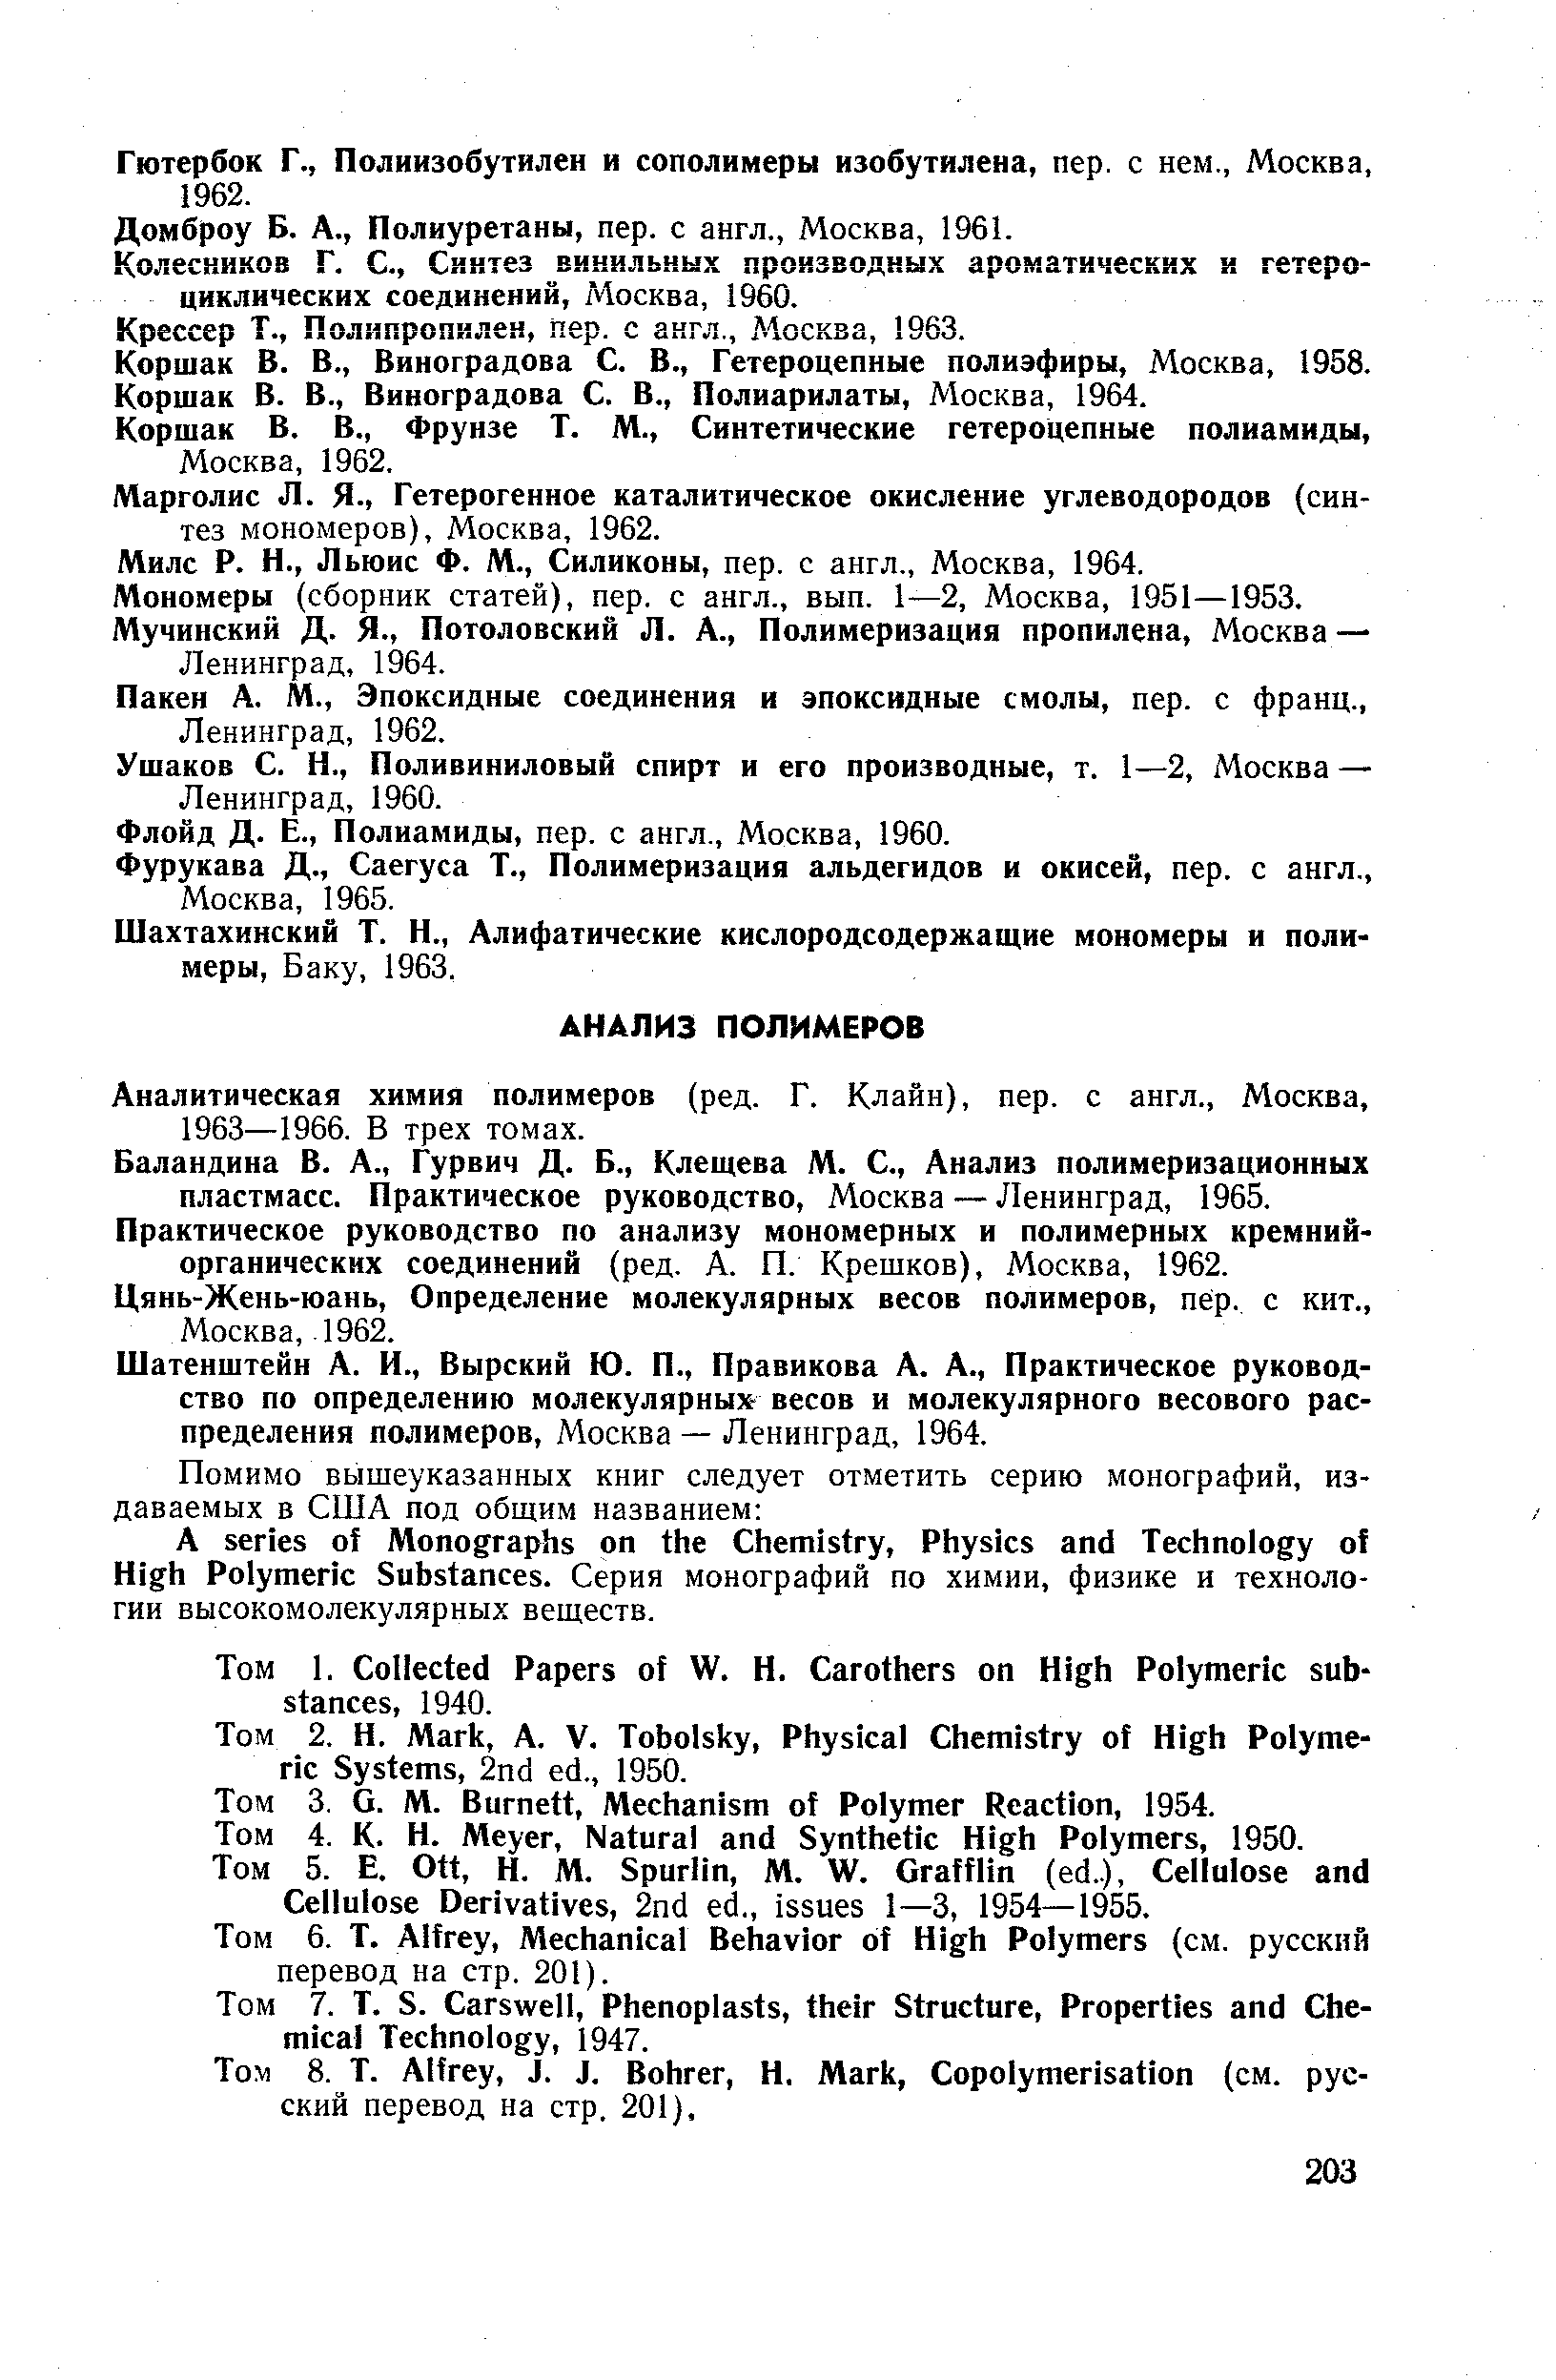 Аналитическая химия полимеров (ред. Г. Клайн), пер. с англ., Москва, 1963—1966. В трех томах.